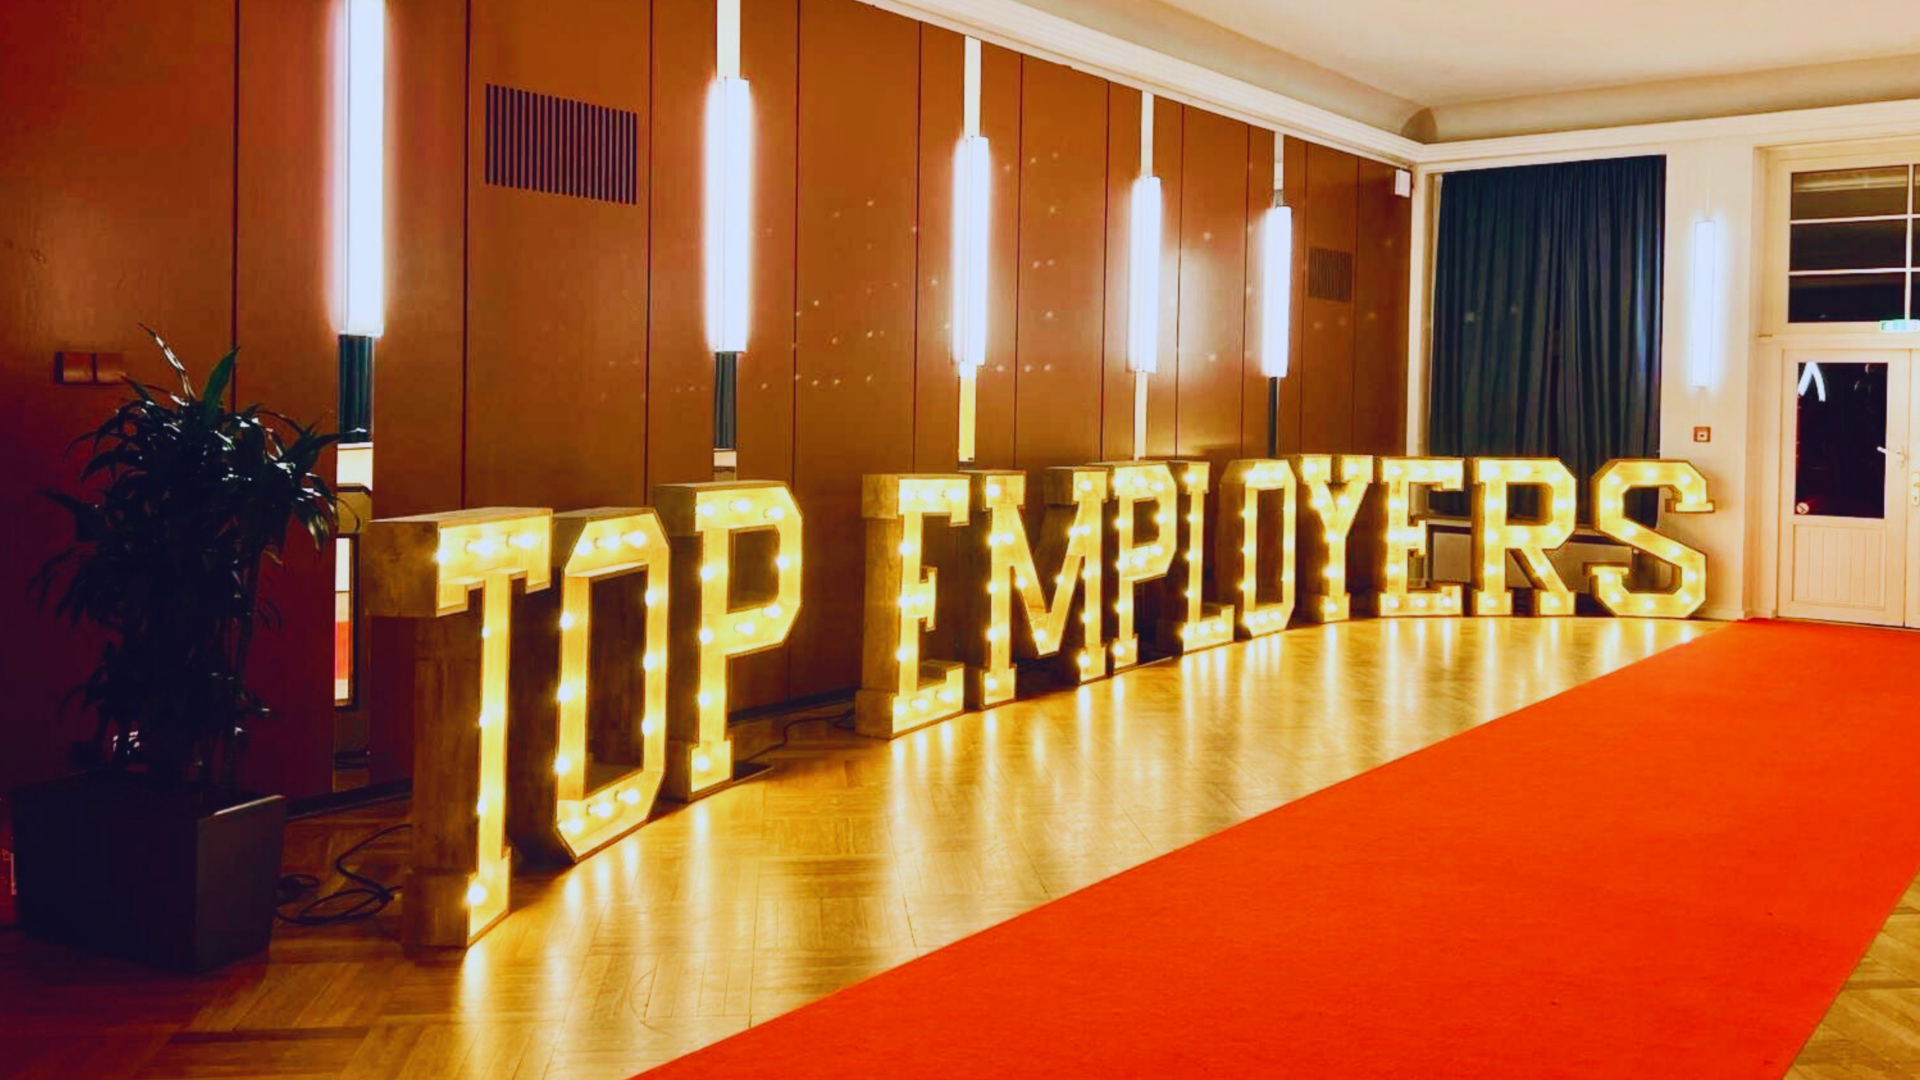 Gold und viel Farbe, passend zum Motto "the art of being a top employer"